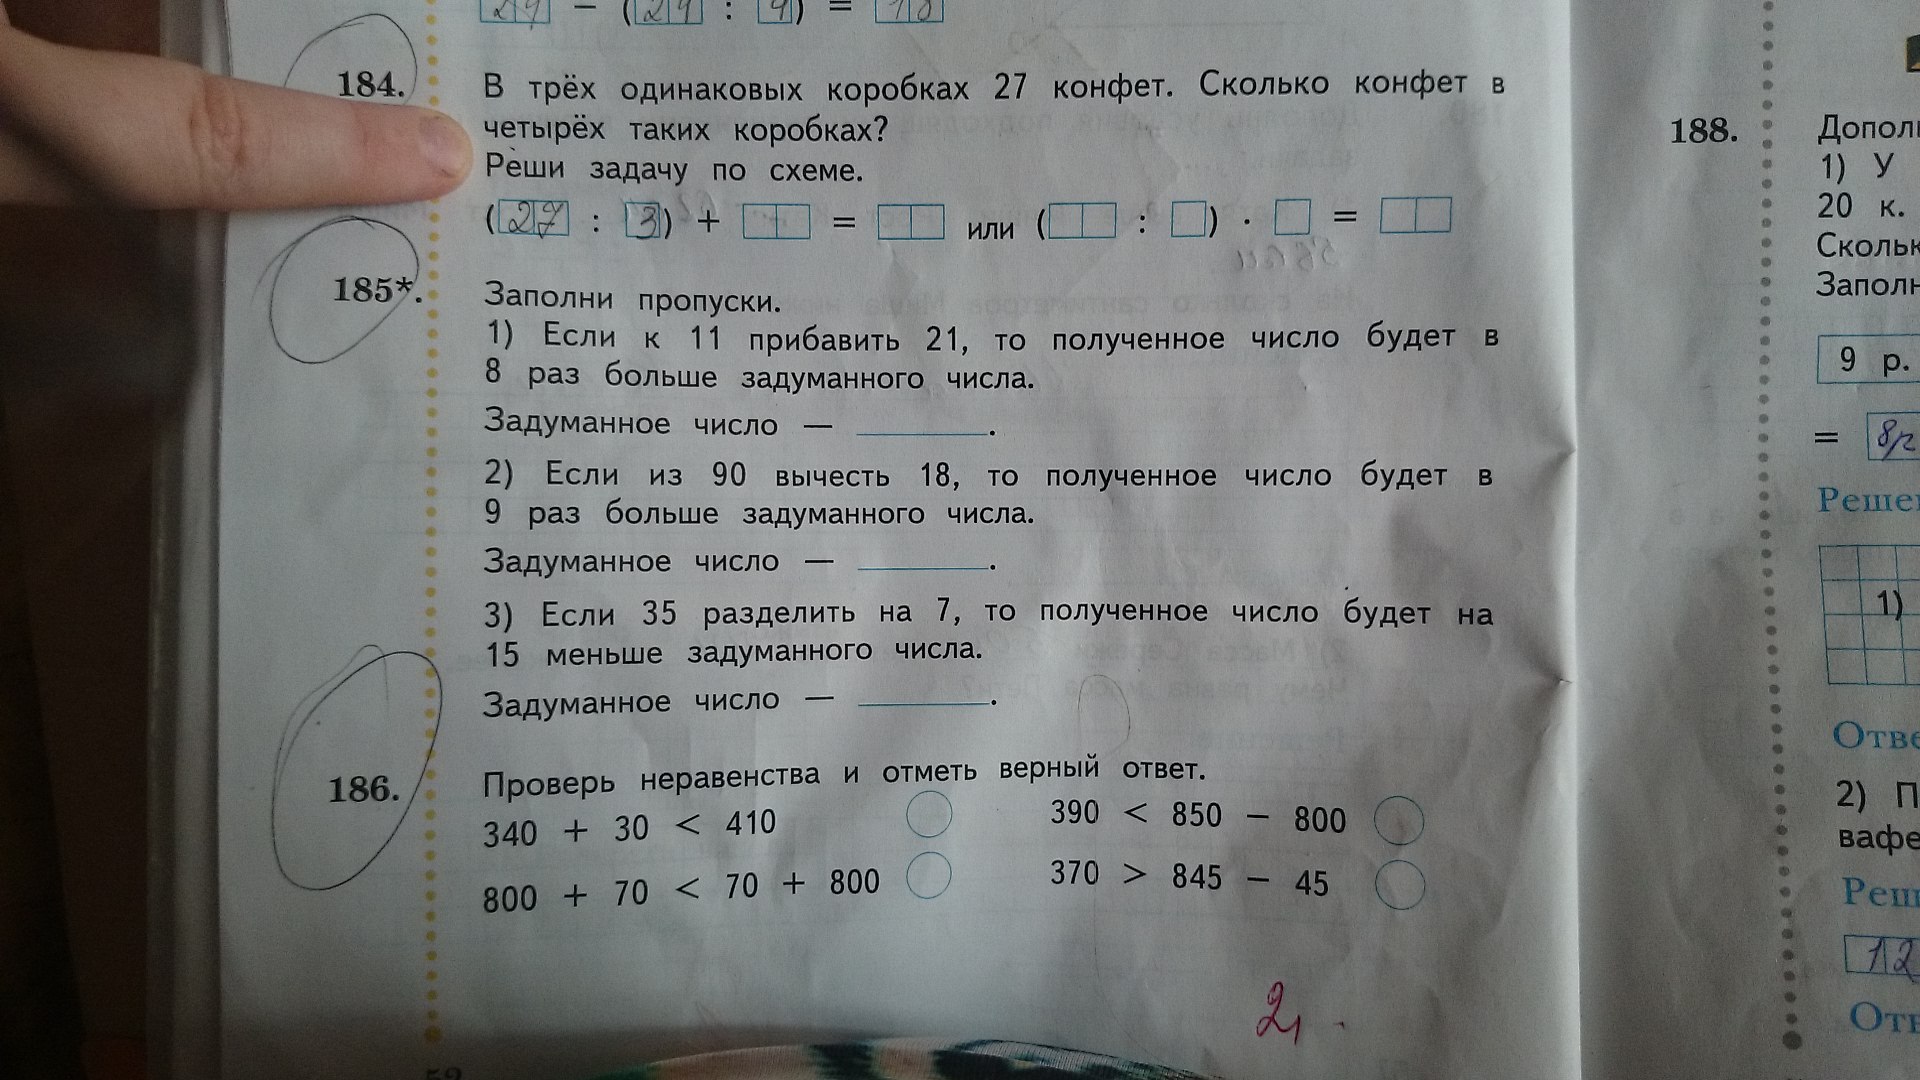 Цена тетради 3 рубля сколько стоят 5. Задачи по математике в одной коробке. Три коробки конфет задача. Одинаковое количество конфет. В трех одинаковых коробках 27 конфет сколько.